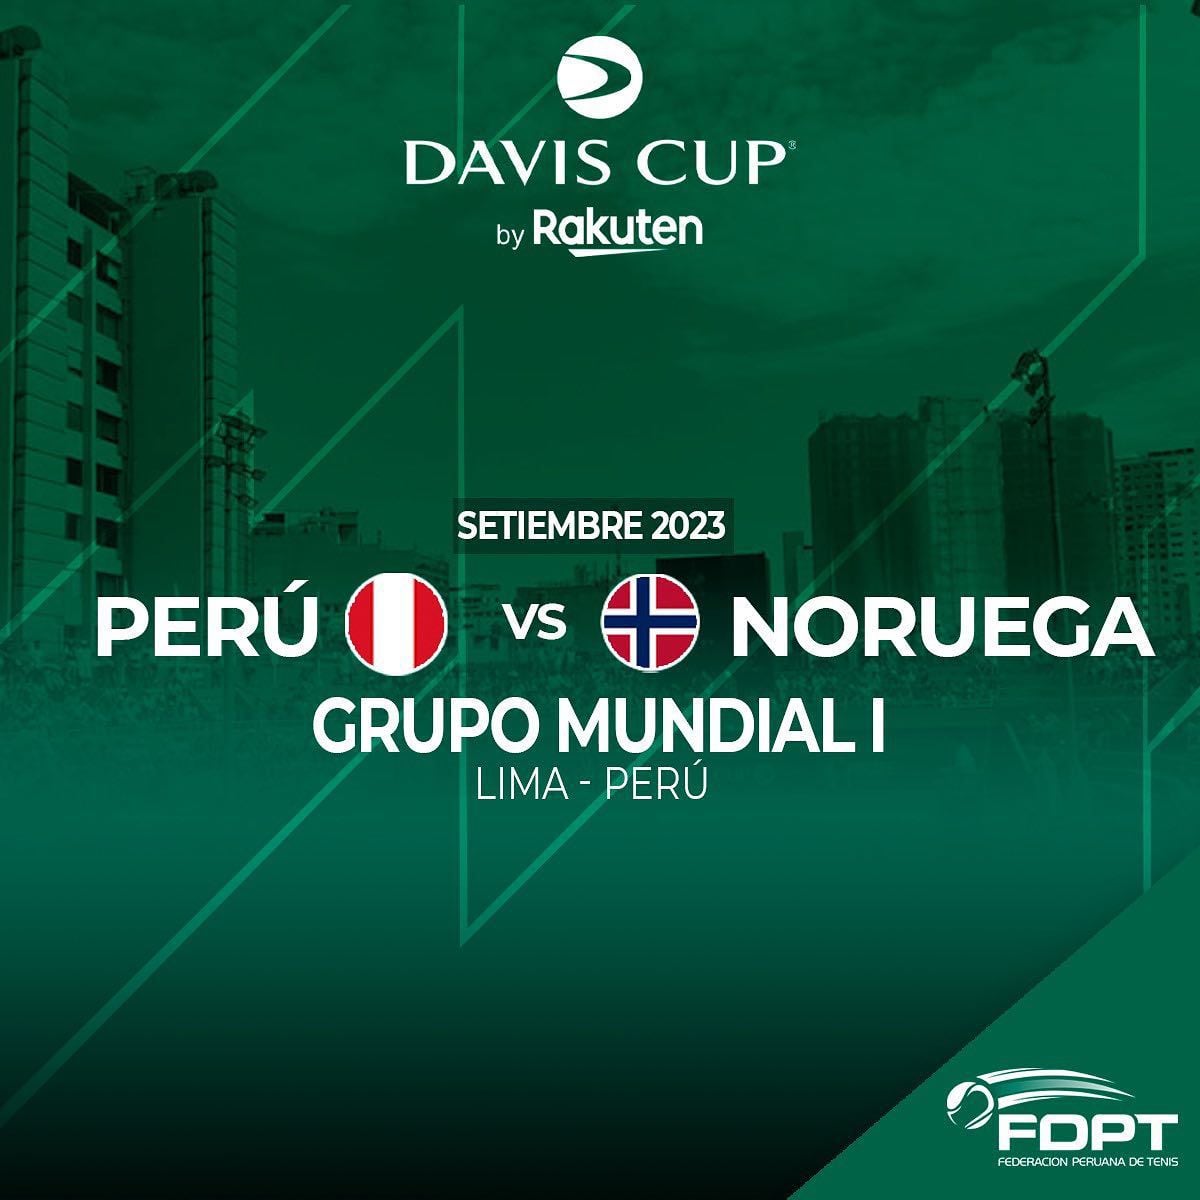 Perú vs Noruega: día, hora y canal Tv de los partidos por Copa Davis -  Infobae